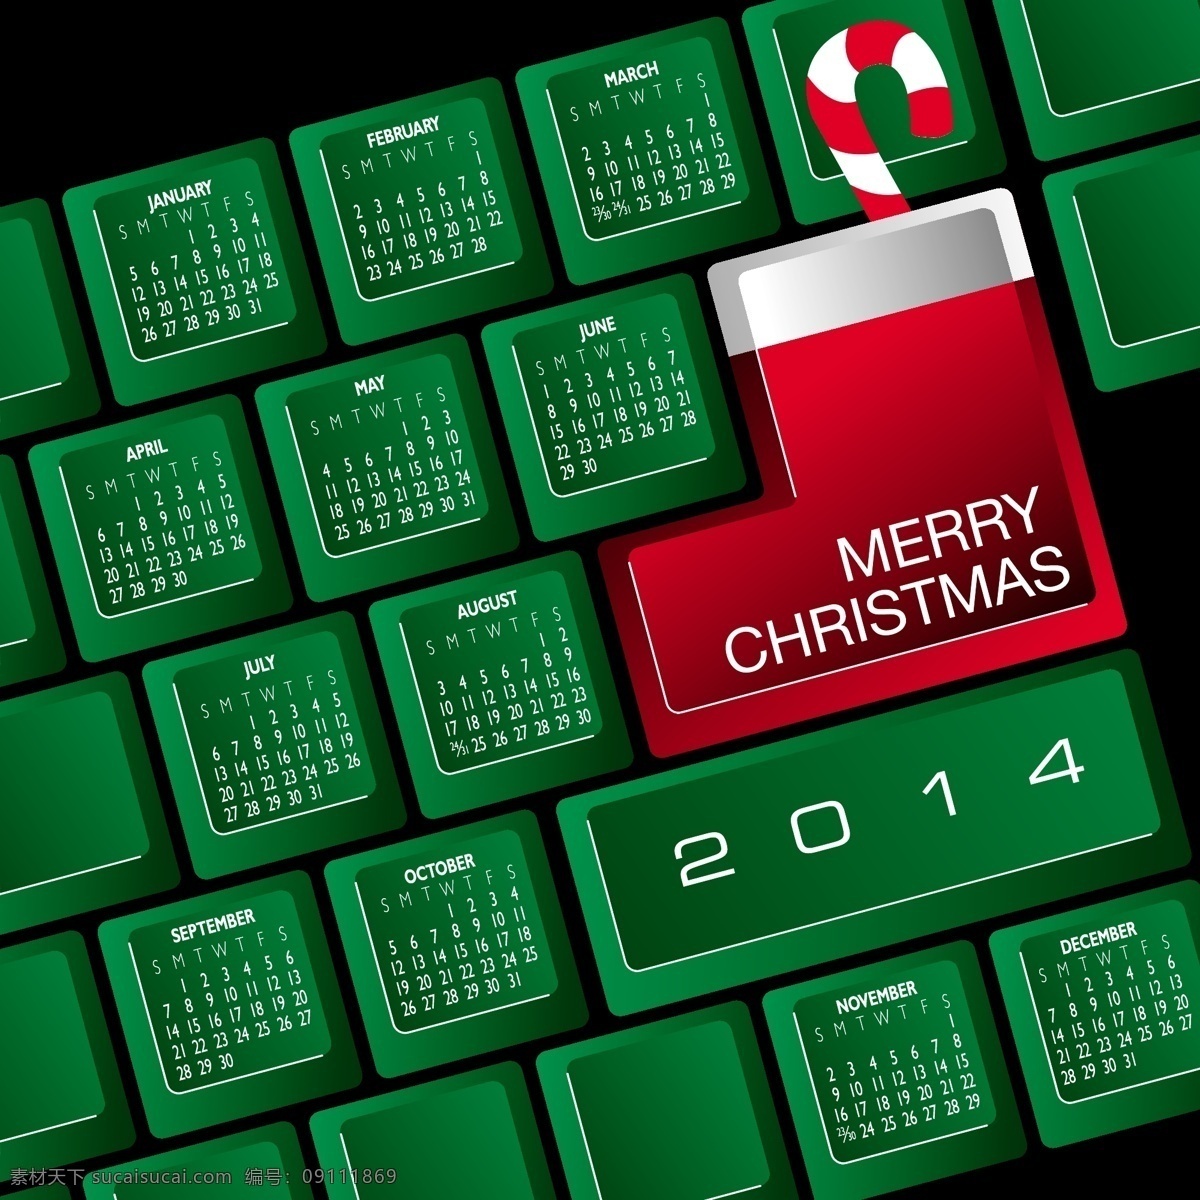 键盘日历模版 绿色 键盘 2014 日历 台历 日历设计 日历模板 日历台历 矢量素材 黑色